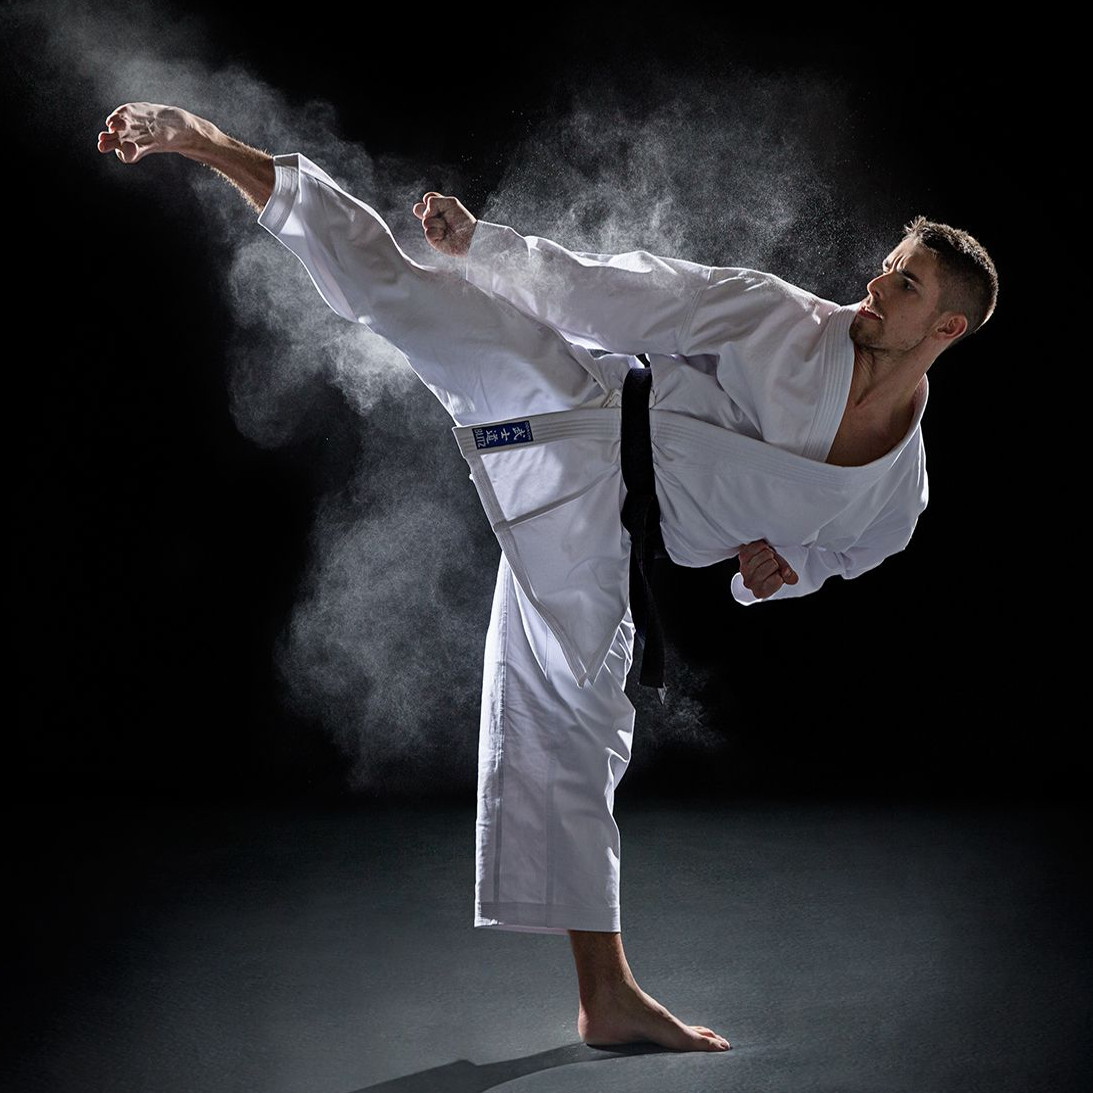 Imagen de Holistic Palma mostrando el arte marcial del Karate